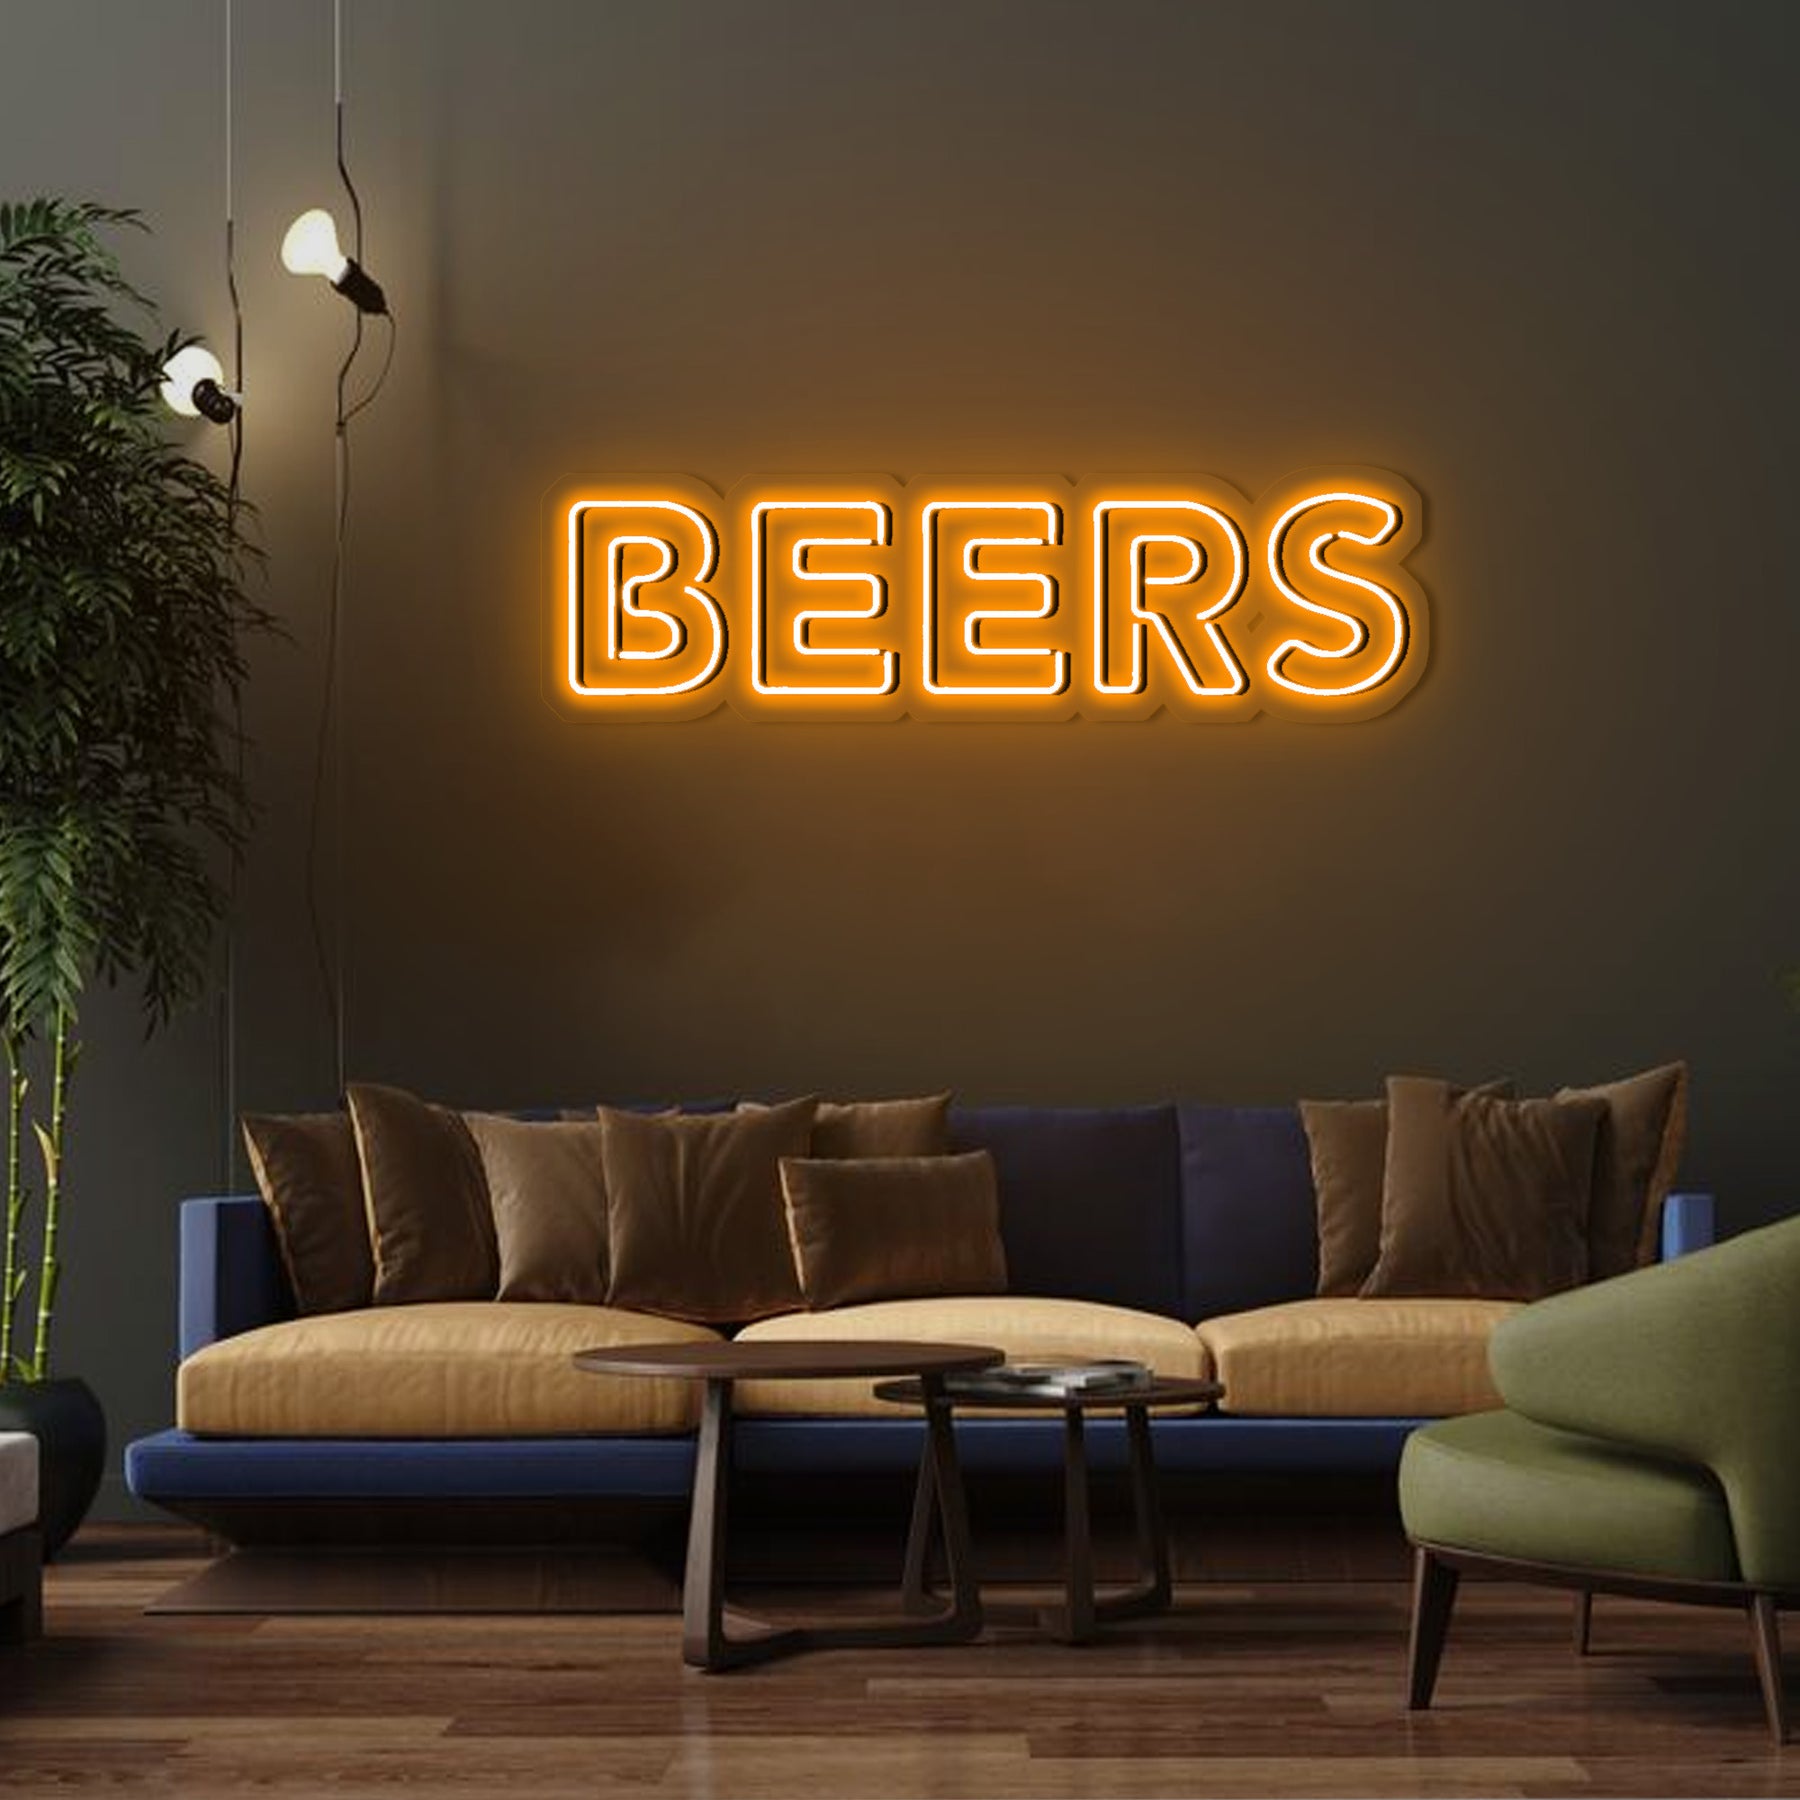 Beers neon sign